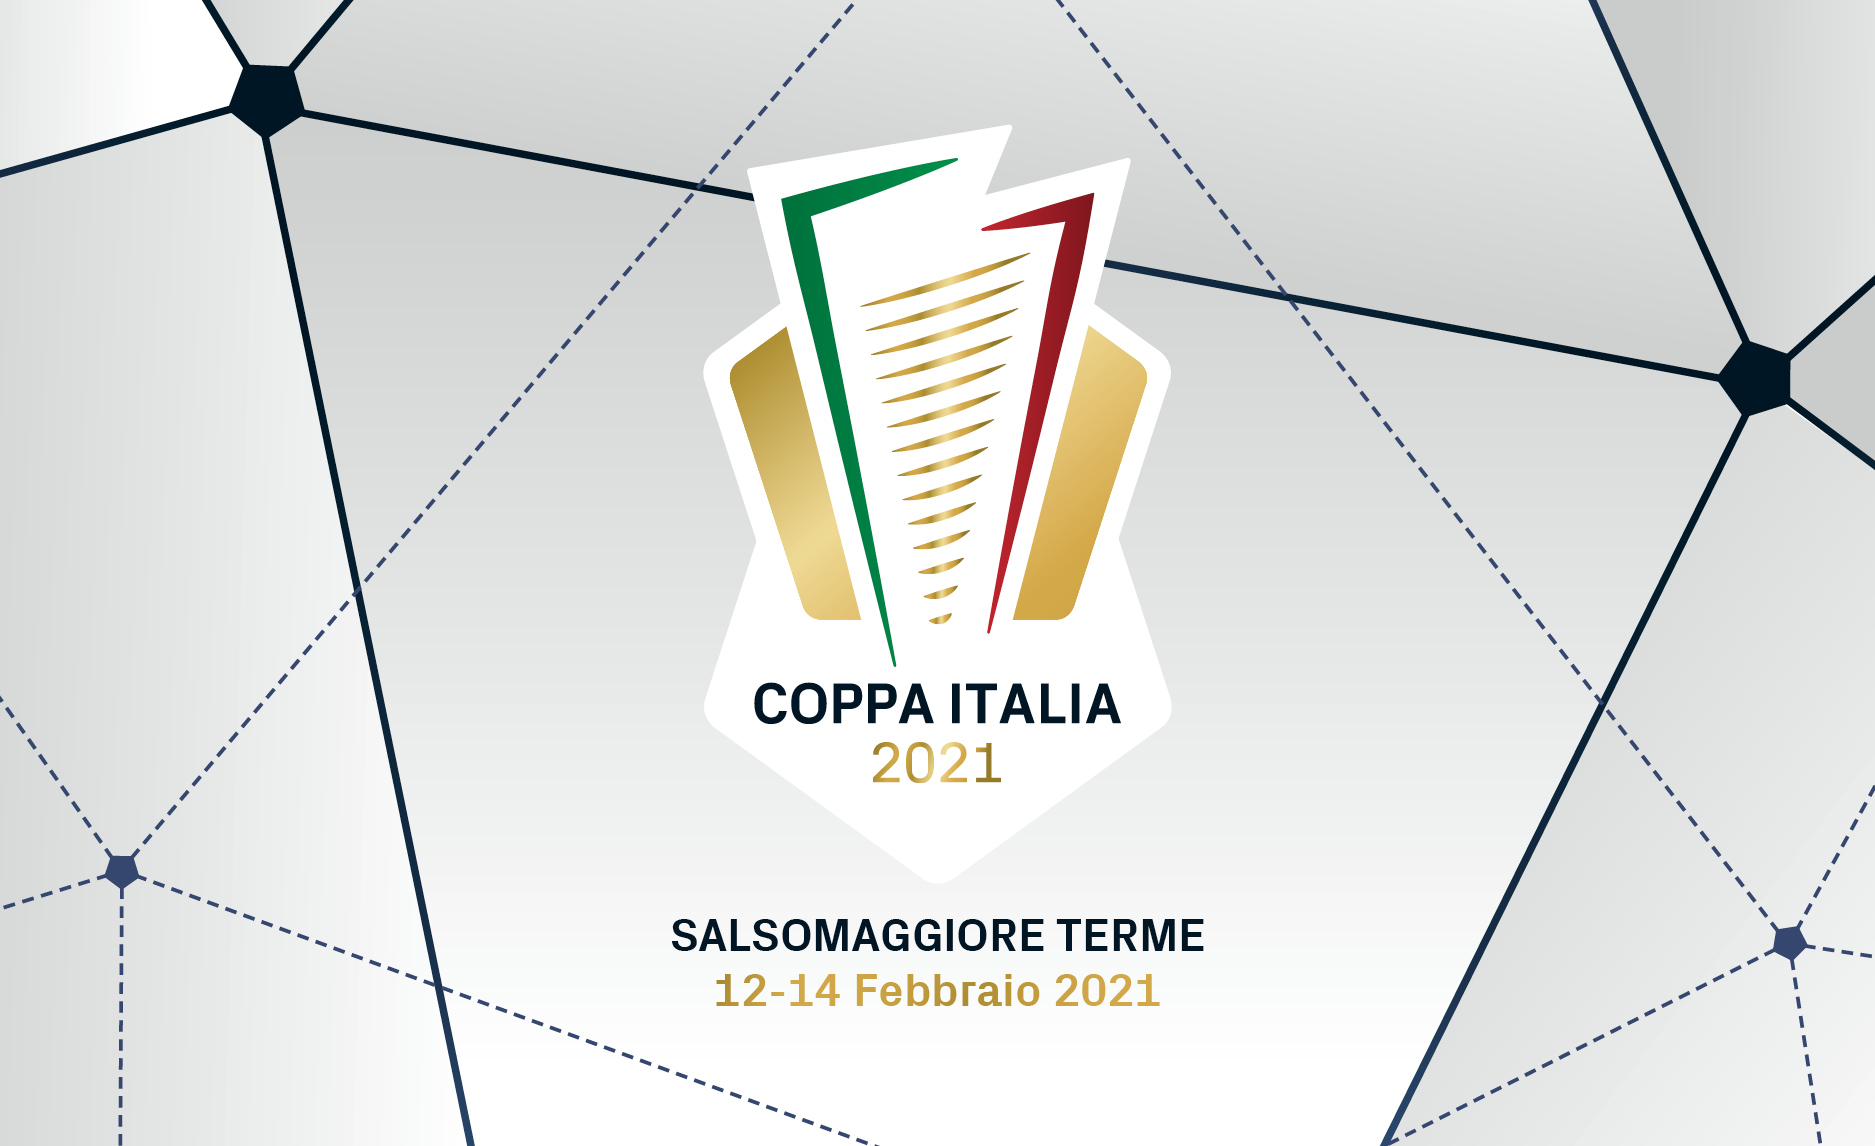 images/FIGH-Coppa_Italia-logo-presentazione.jpg